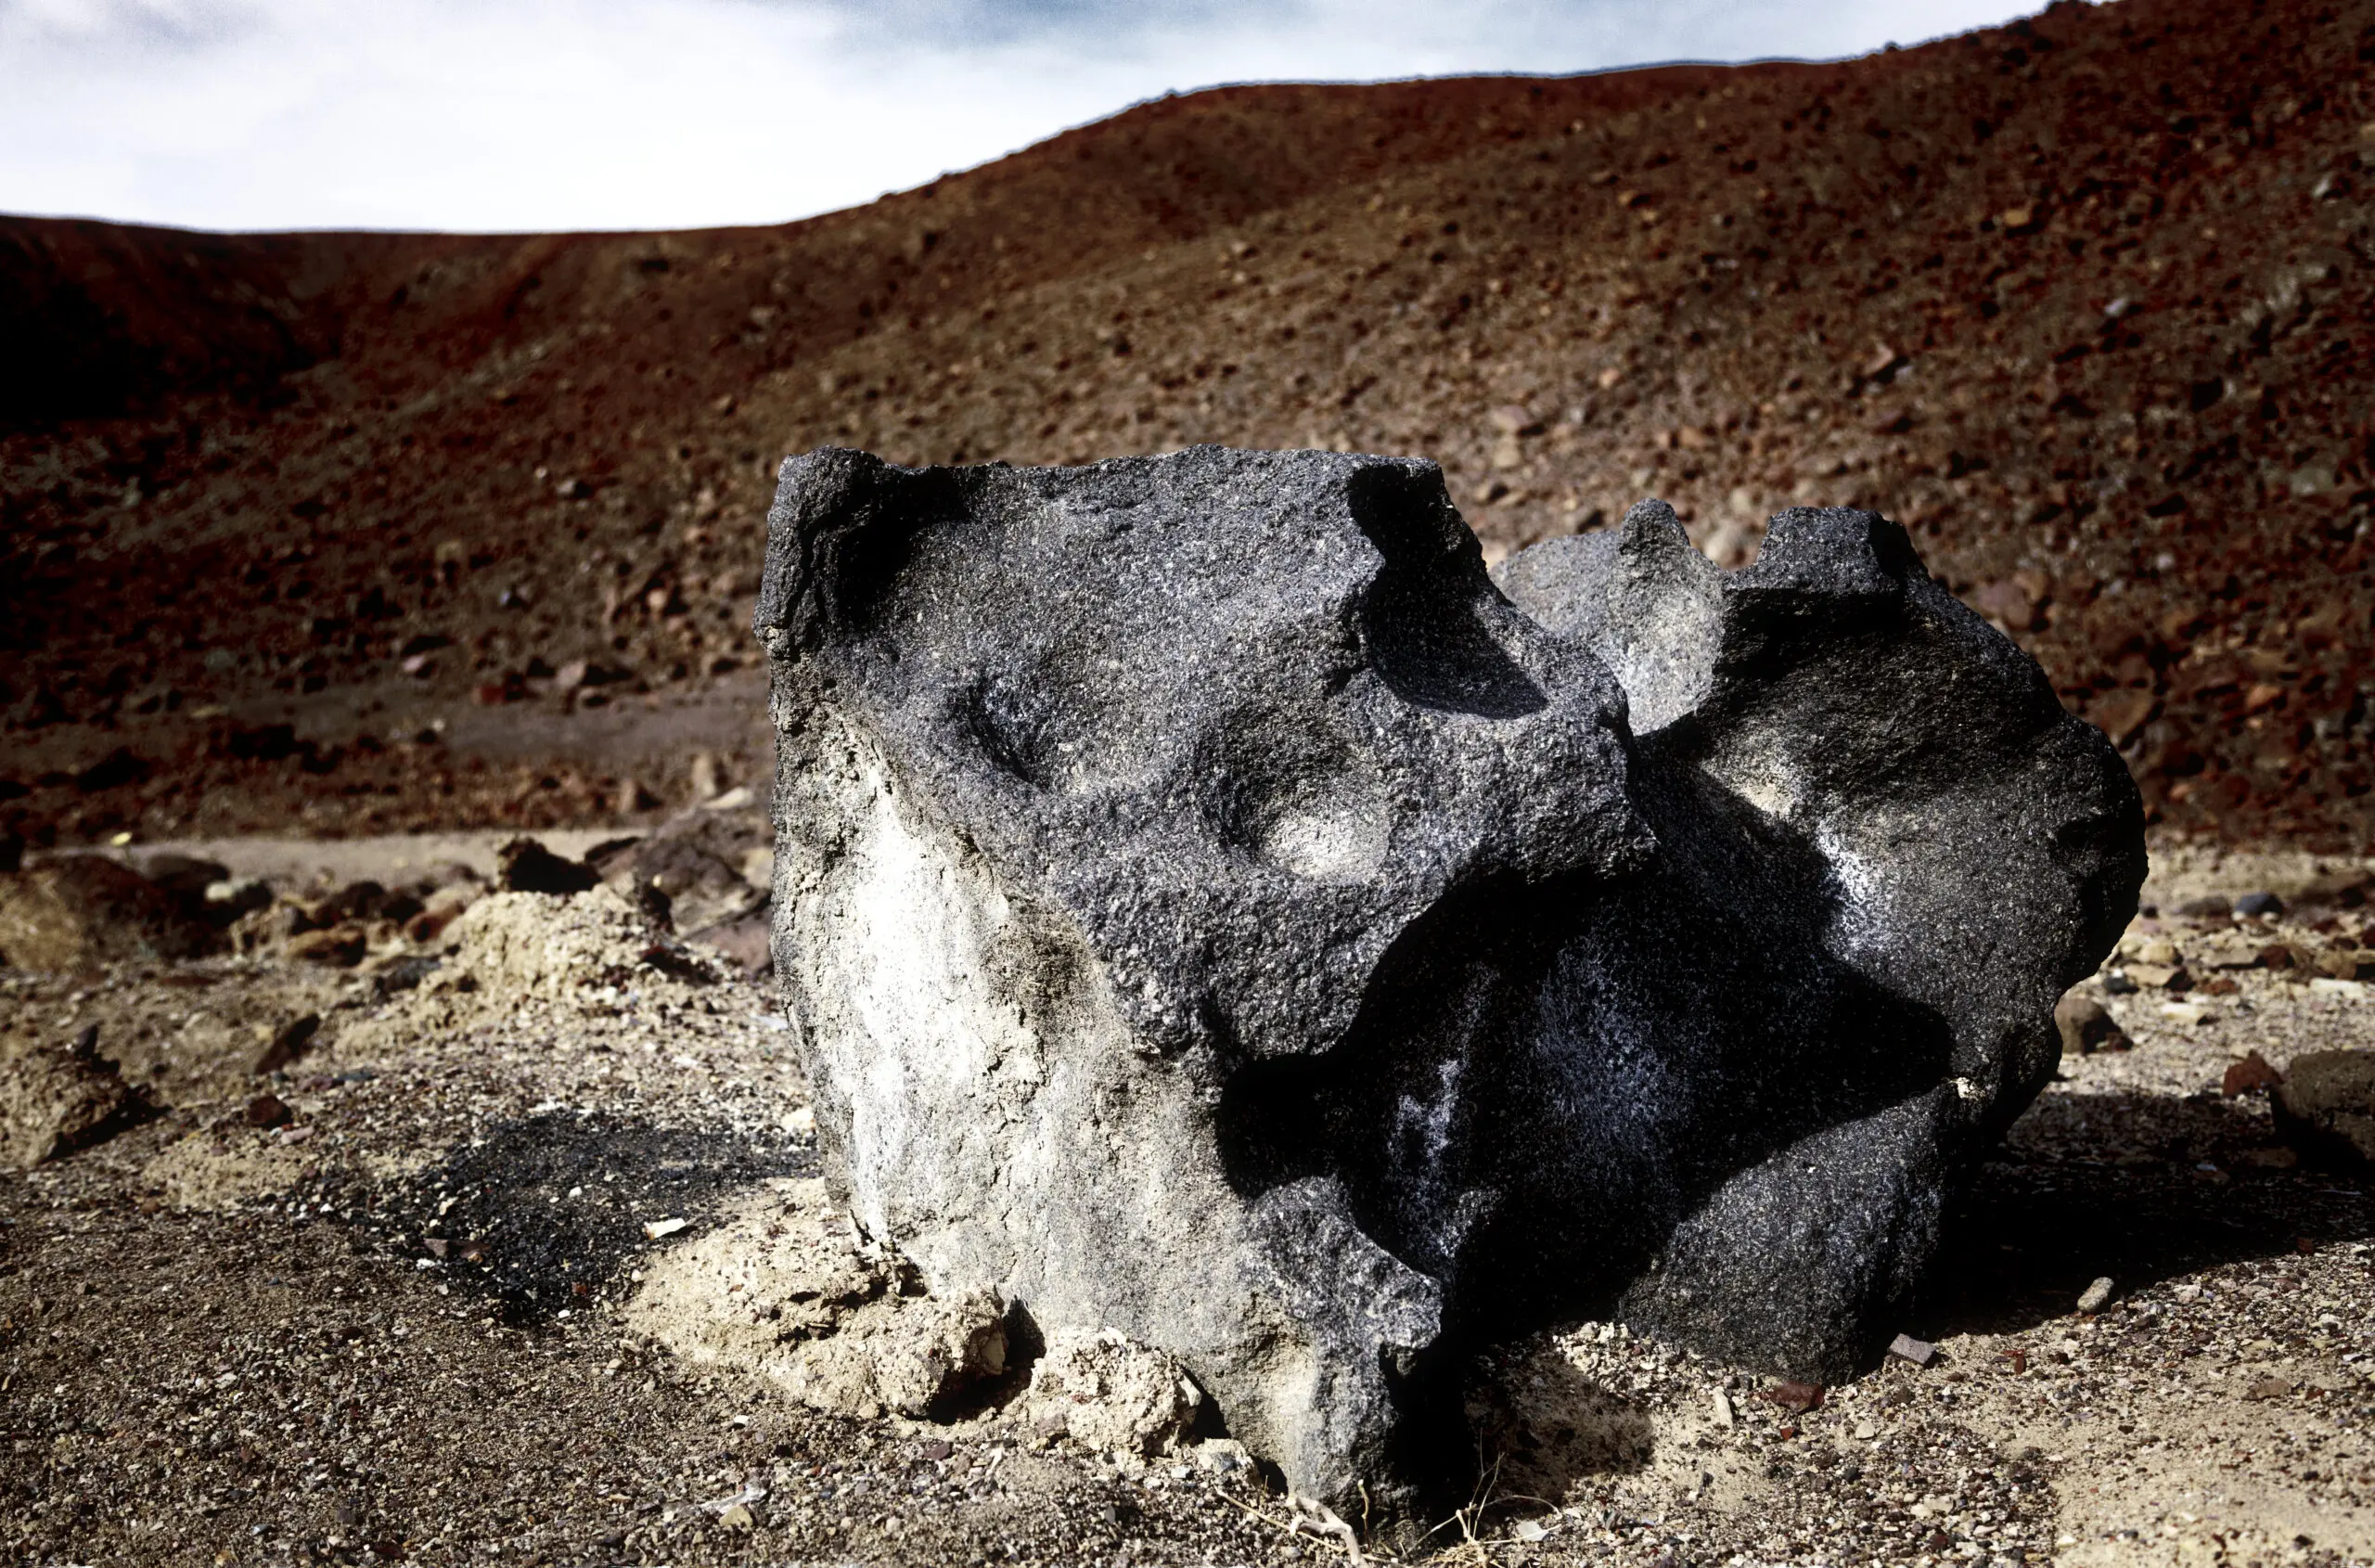 Wandbild (3972) Black Rock präsentiert: Details und Strukturen,Natur,Steine